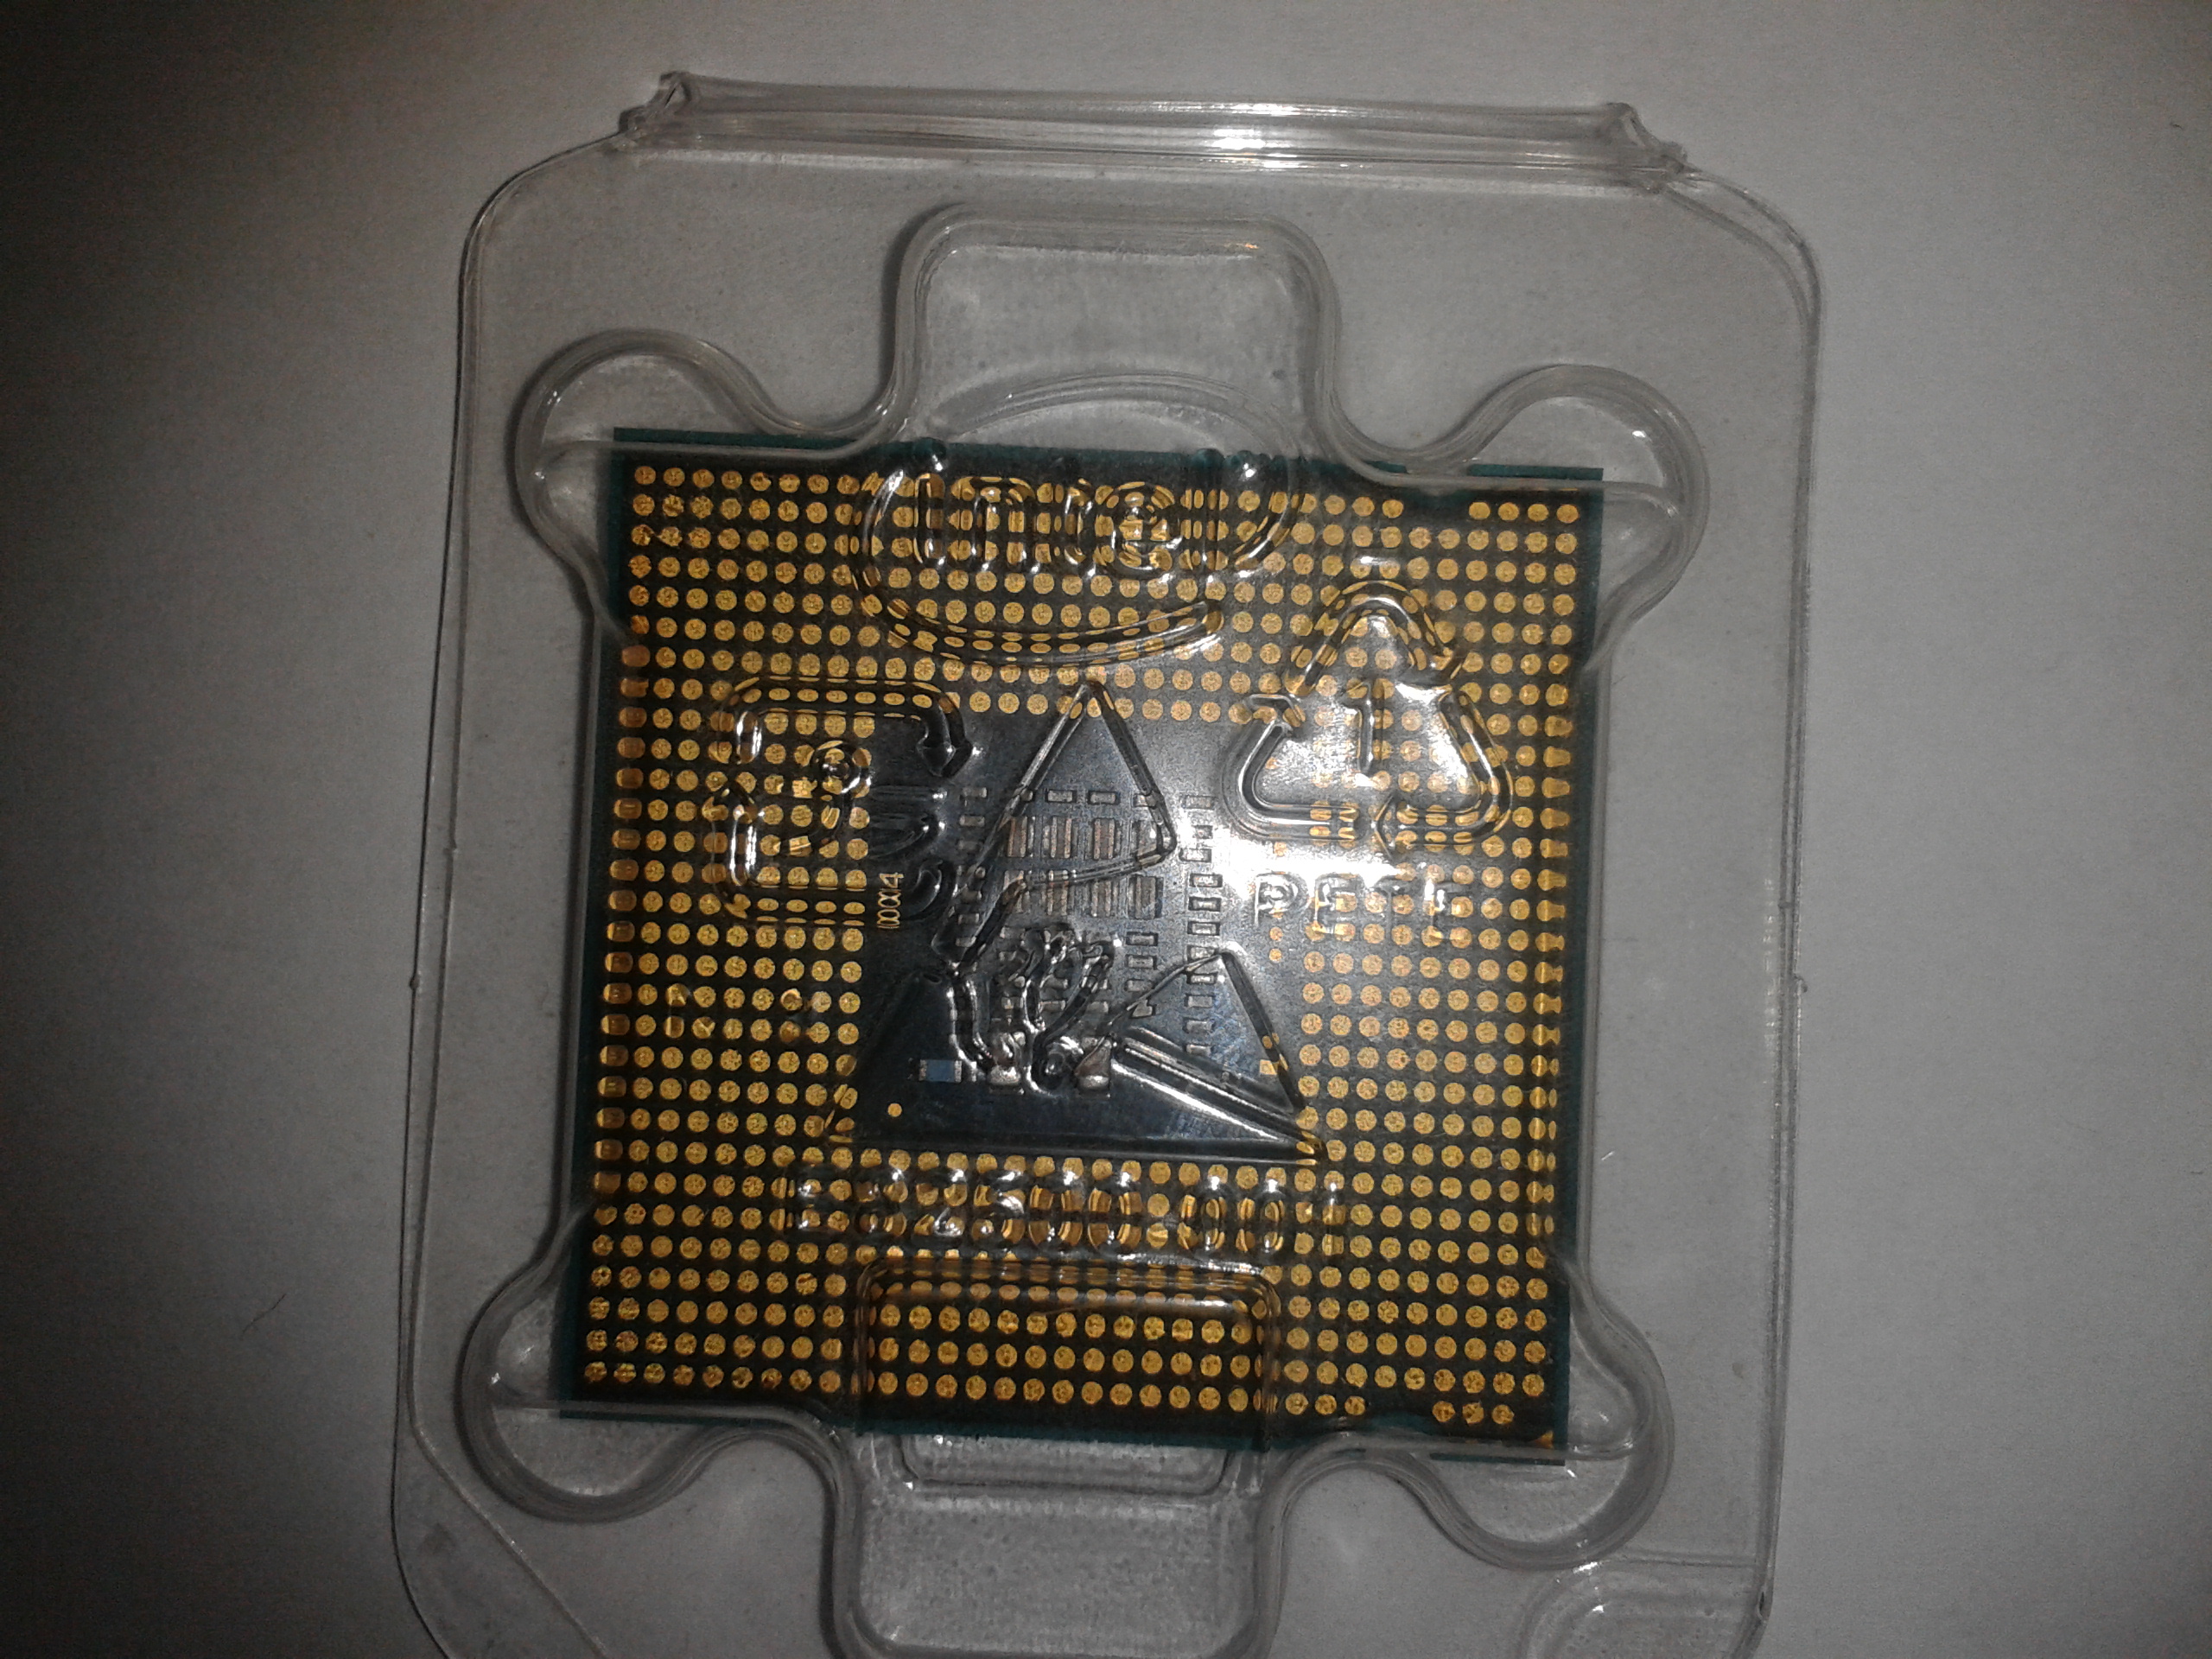 Pentium r dual-core e5200